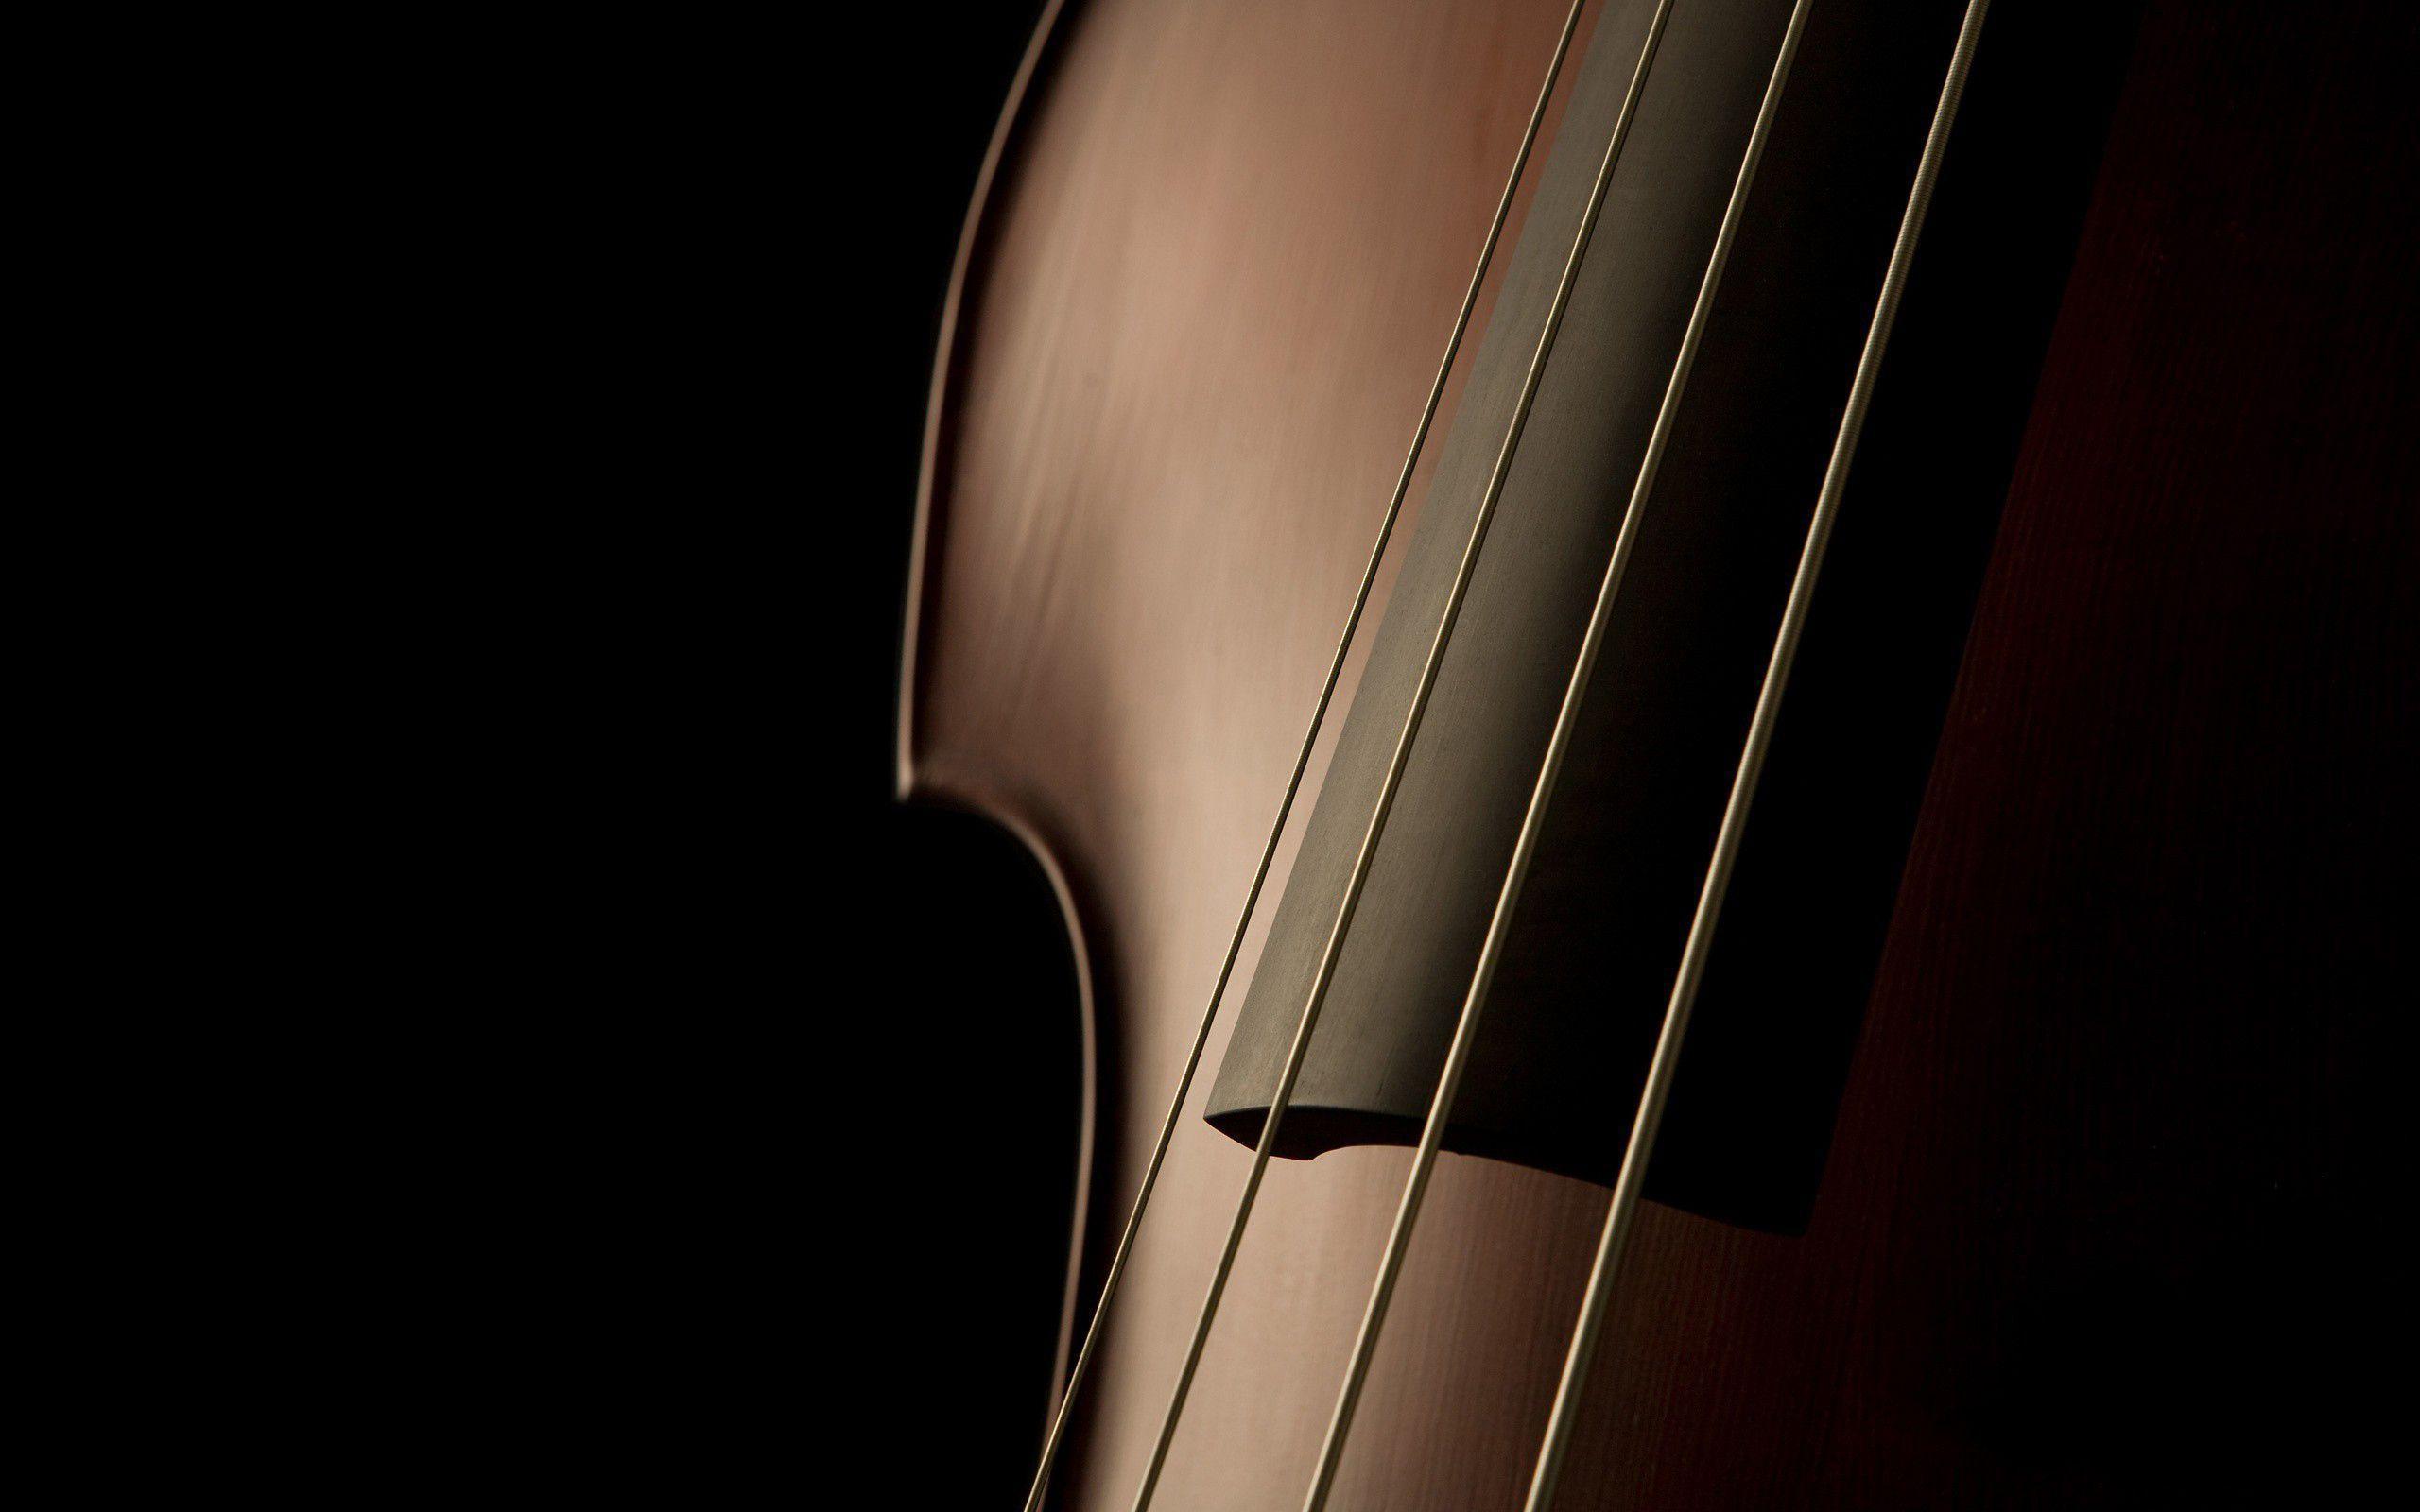 Awesome Violin Macro Wallpaper Photo 165 Wallpaper. High